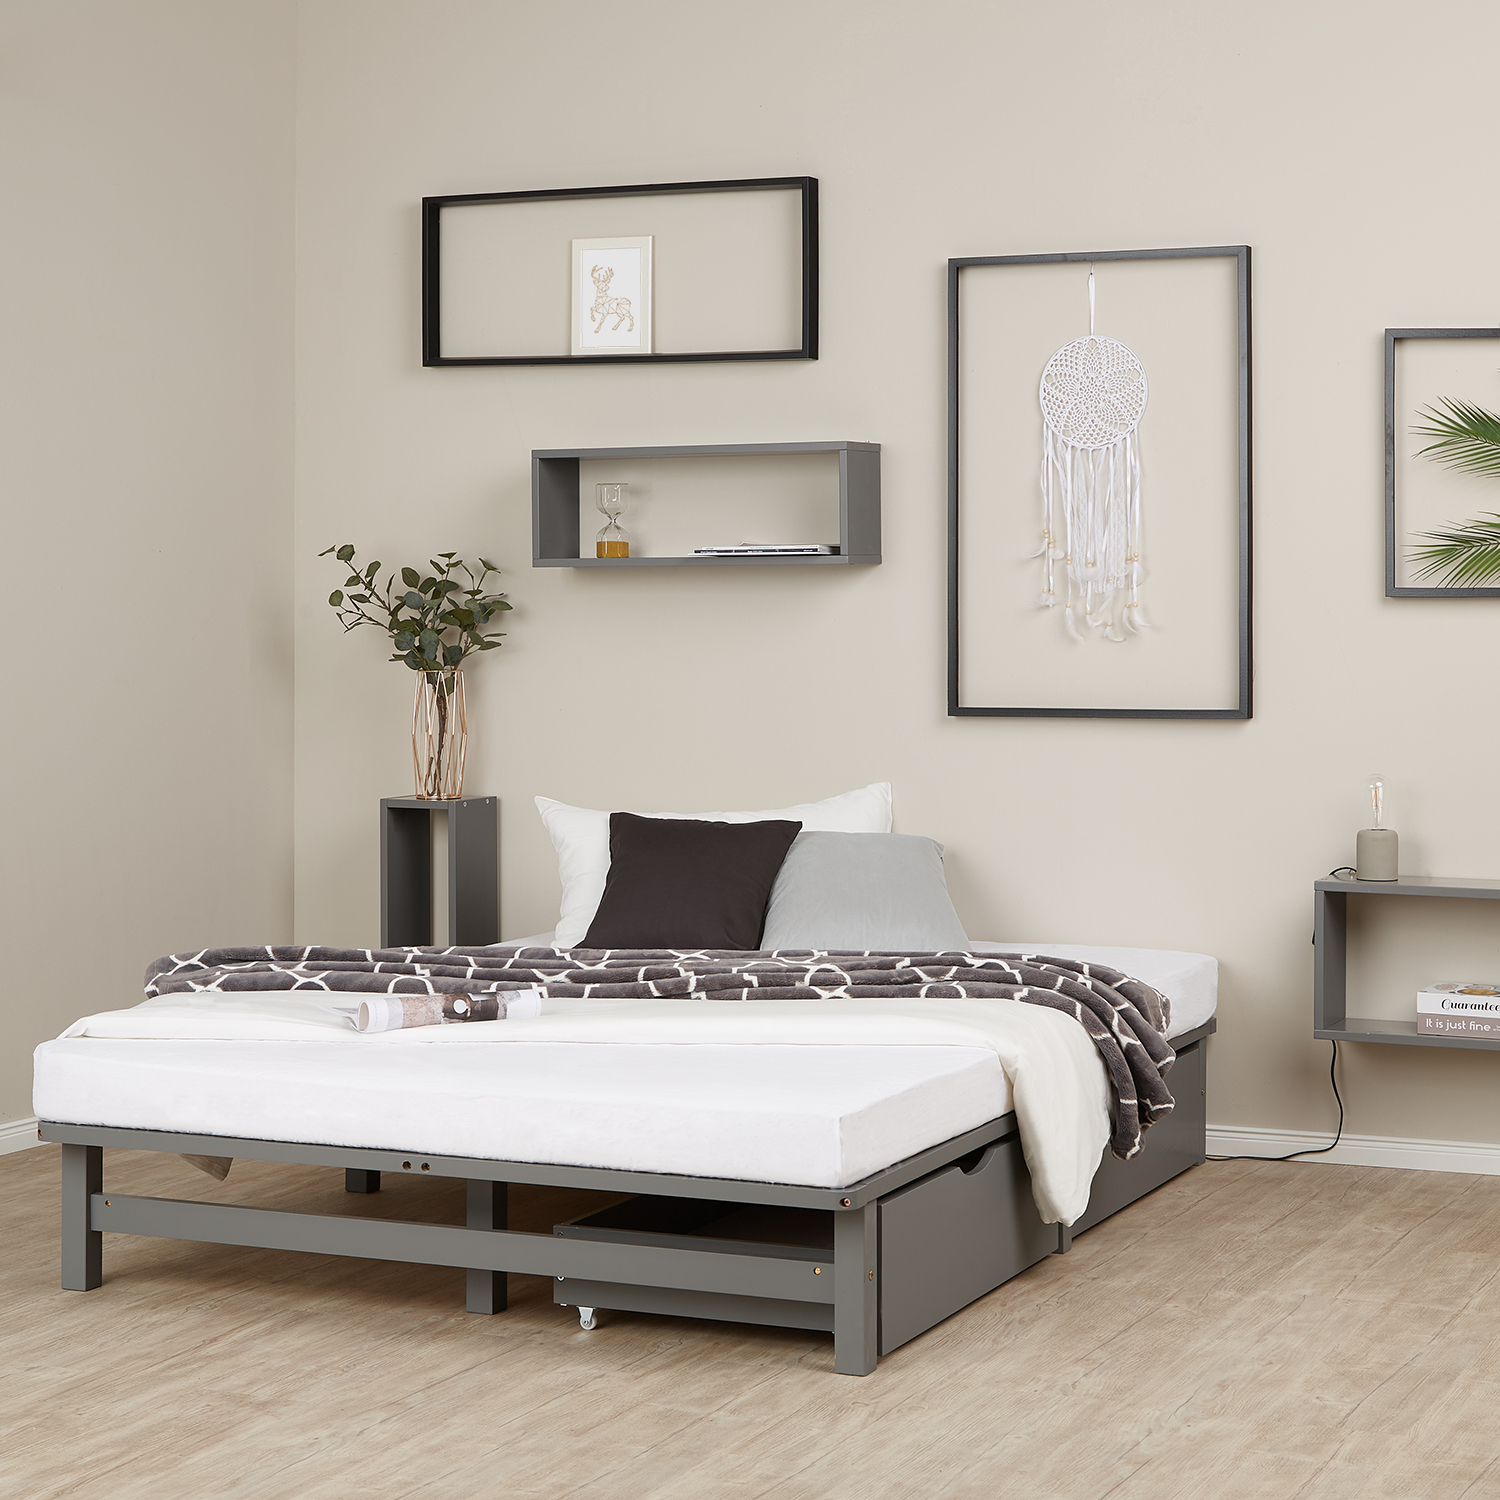 Palettenbett 140x200 cm mit Bettkasten 2er Set Lattenrost Holzbett Palettenmöbel Bett